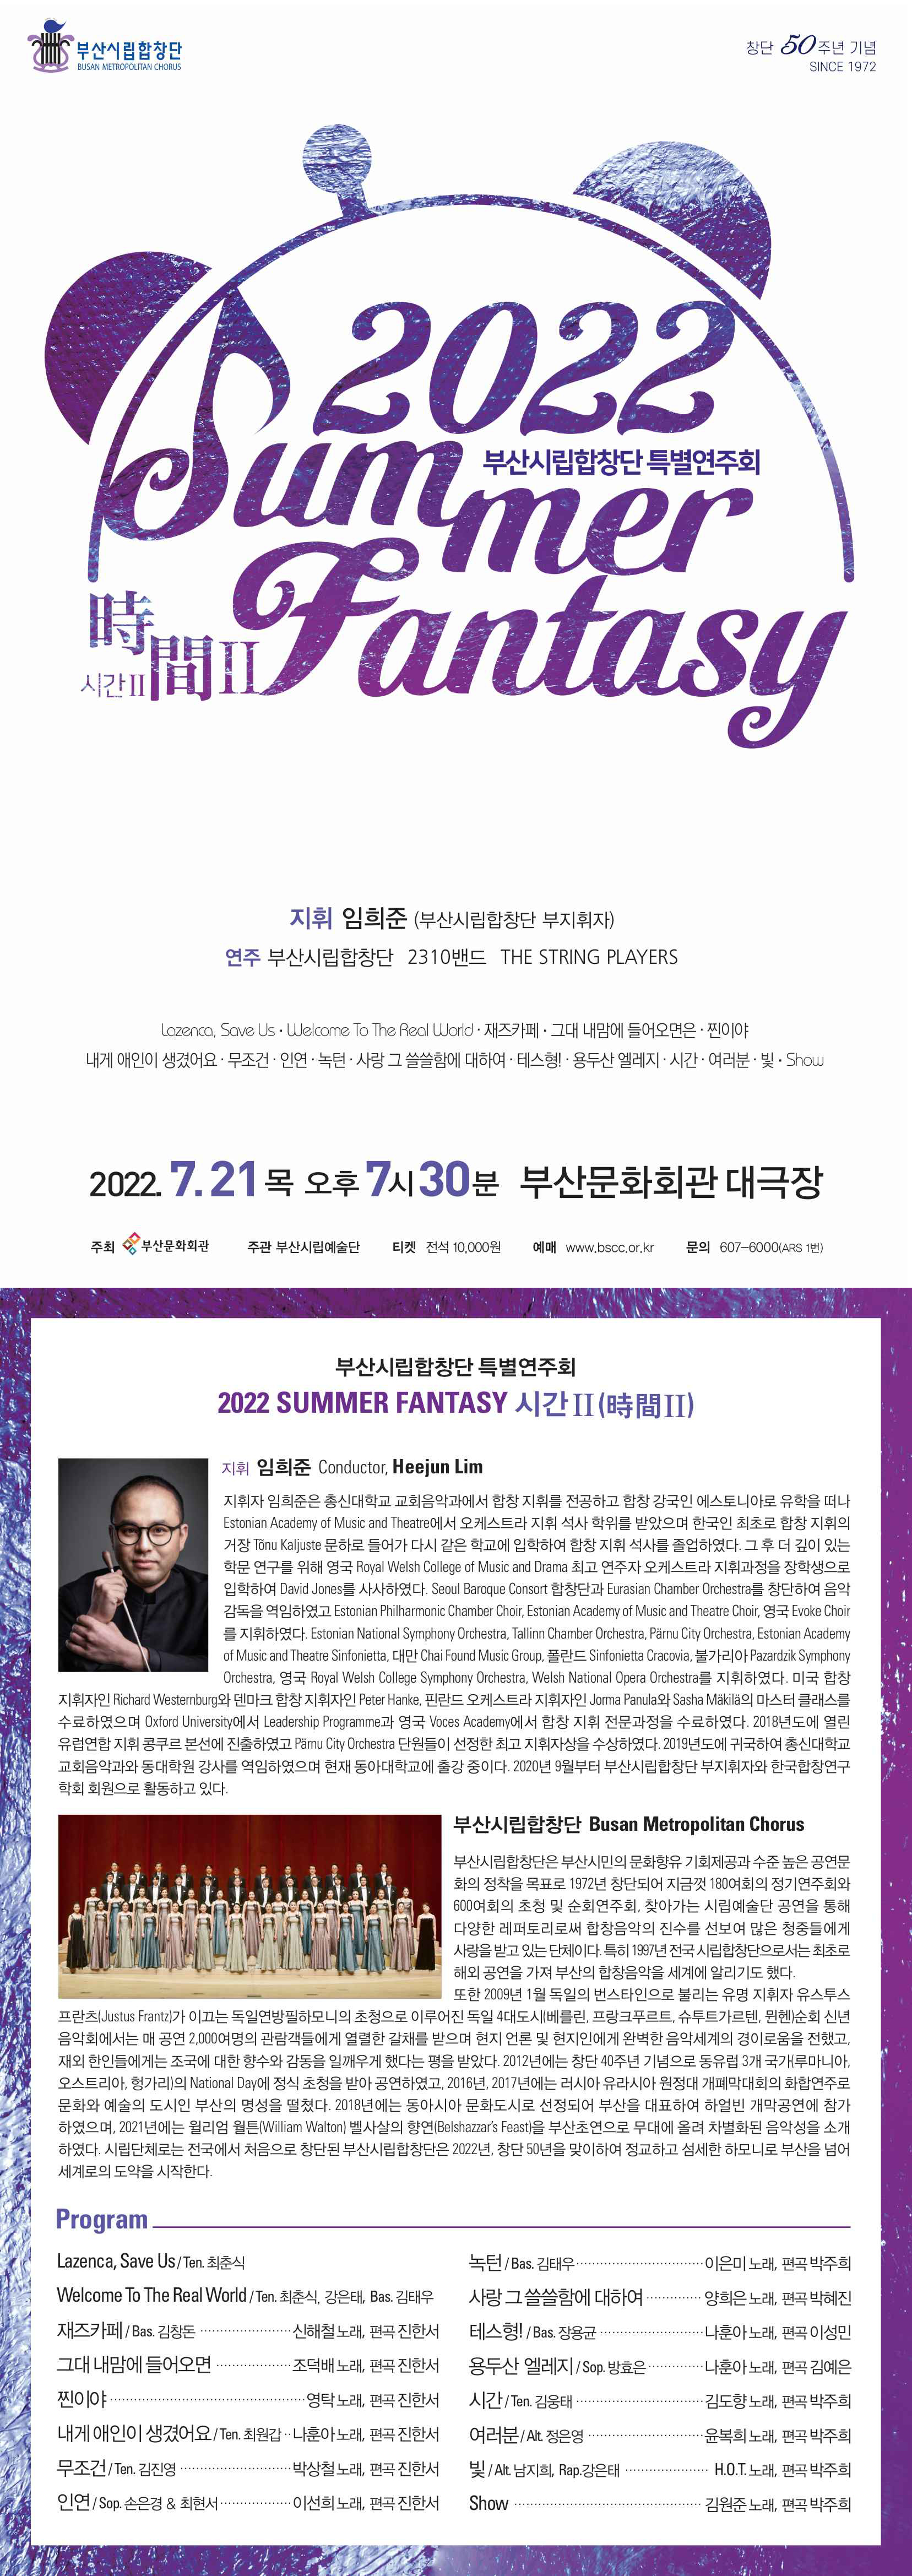 부산시립합창단 특별연주회 <2022 Summer Fantasy 시간Ⅱ>